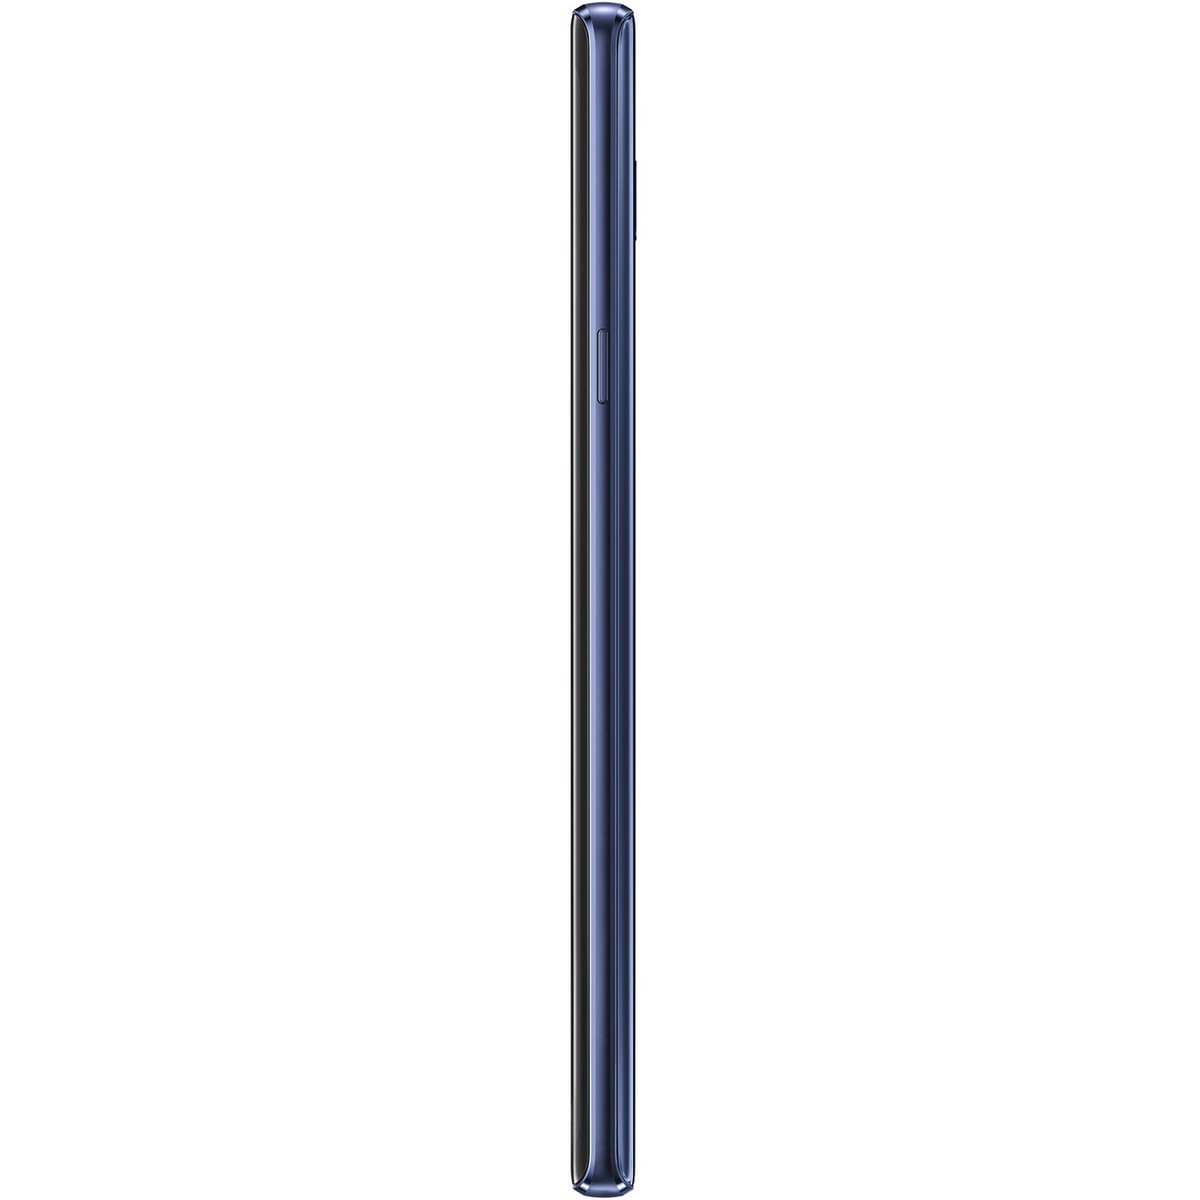 Samsung Galaxy Note9 SMN960F 512GB Blue